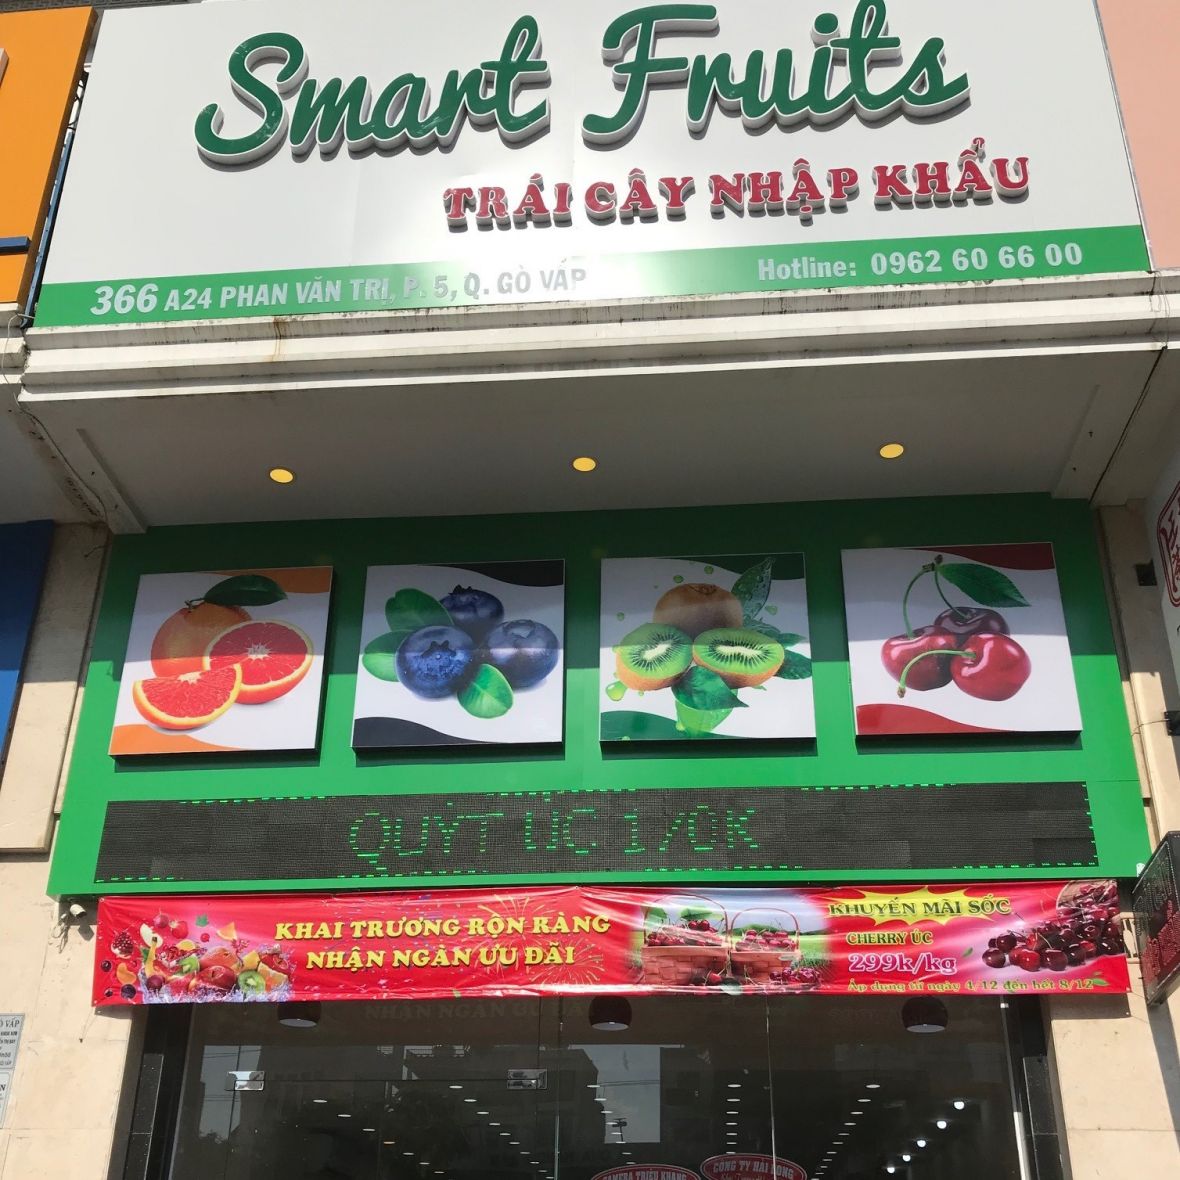 Outside Smarts Fruit store